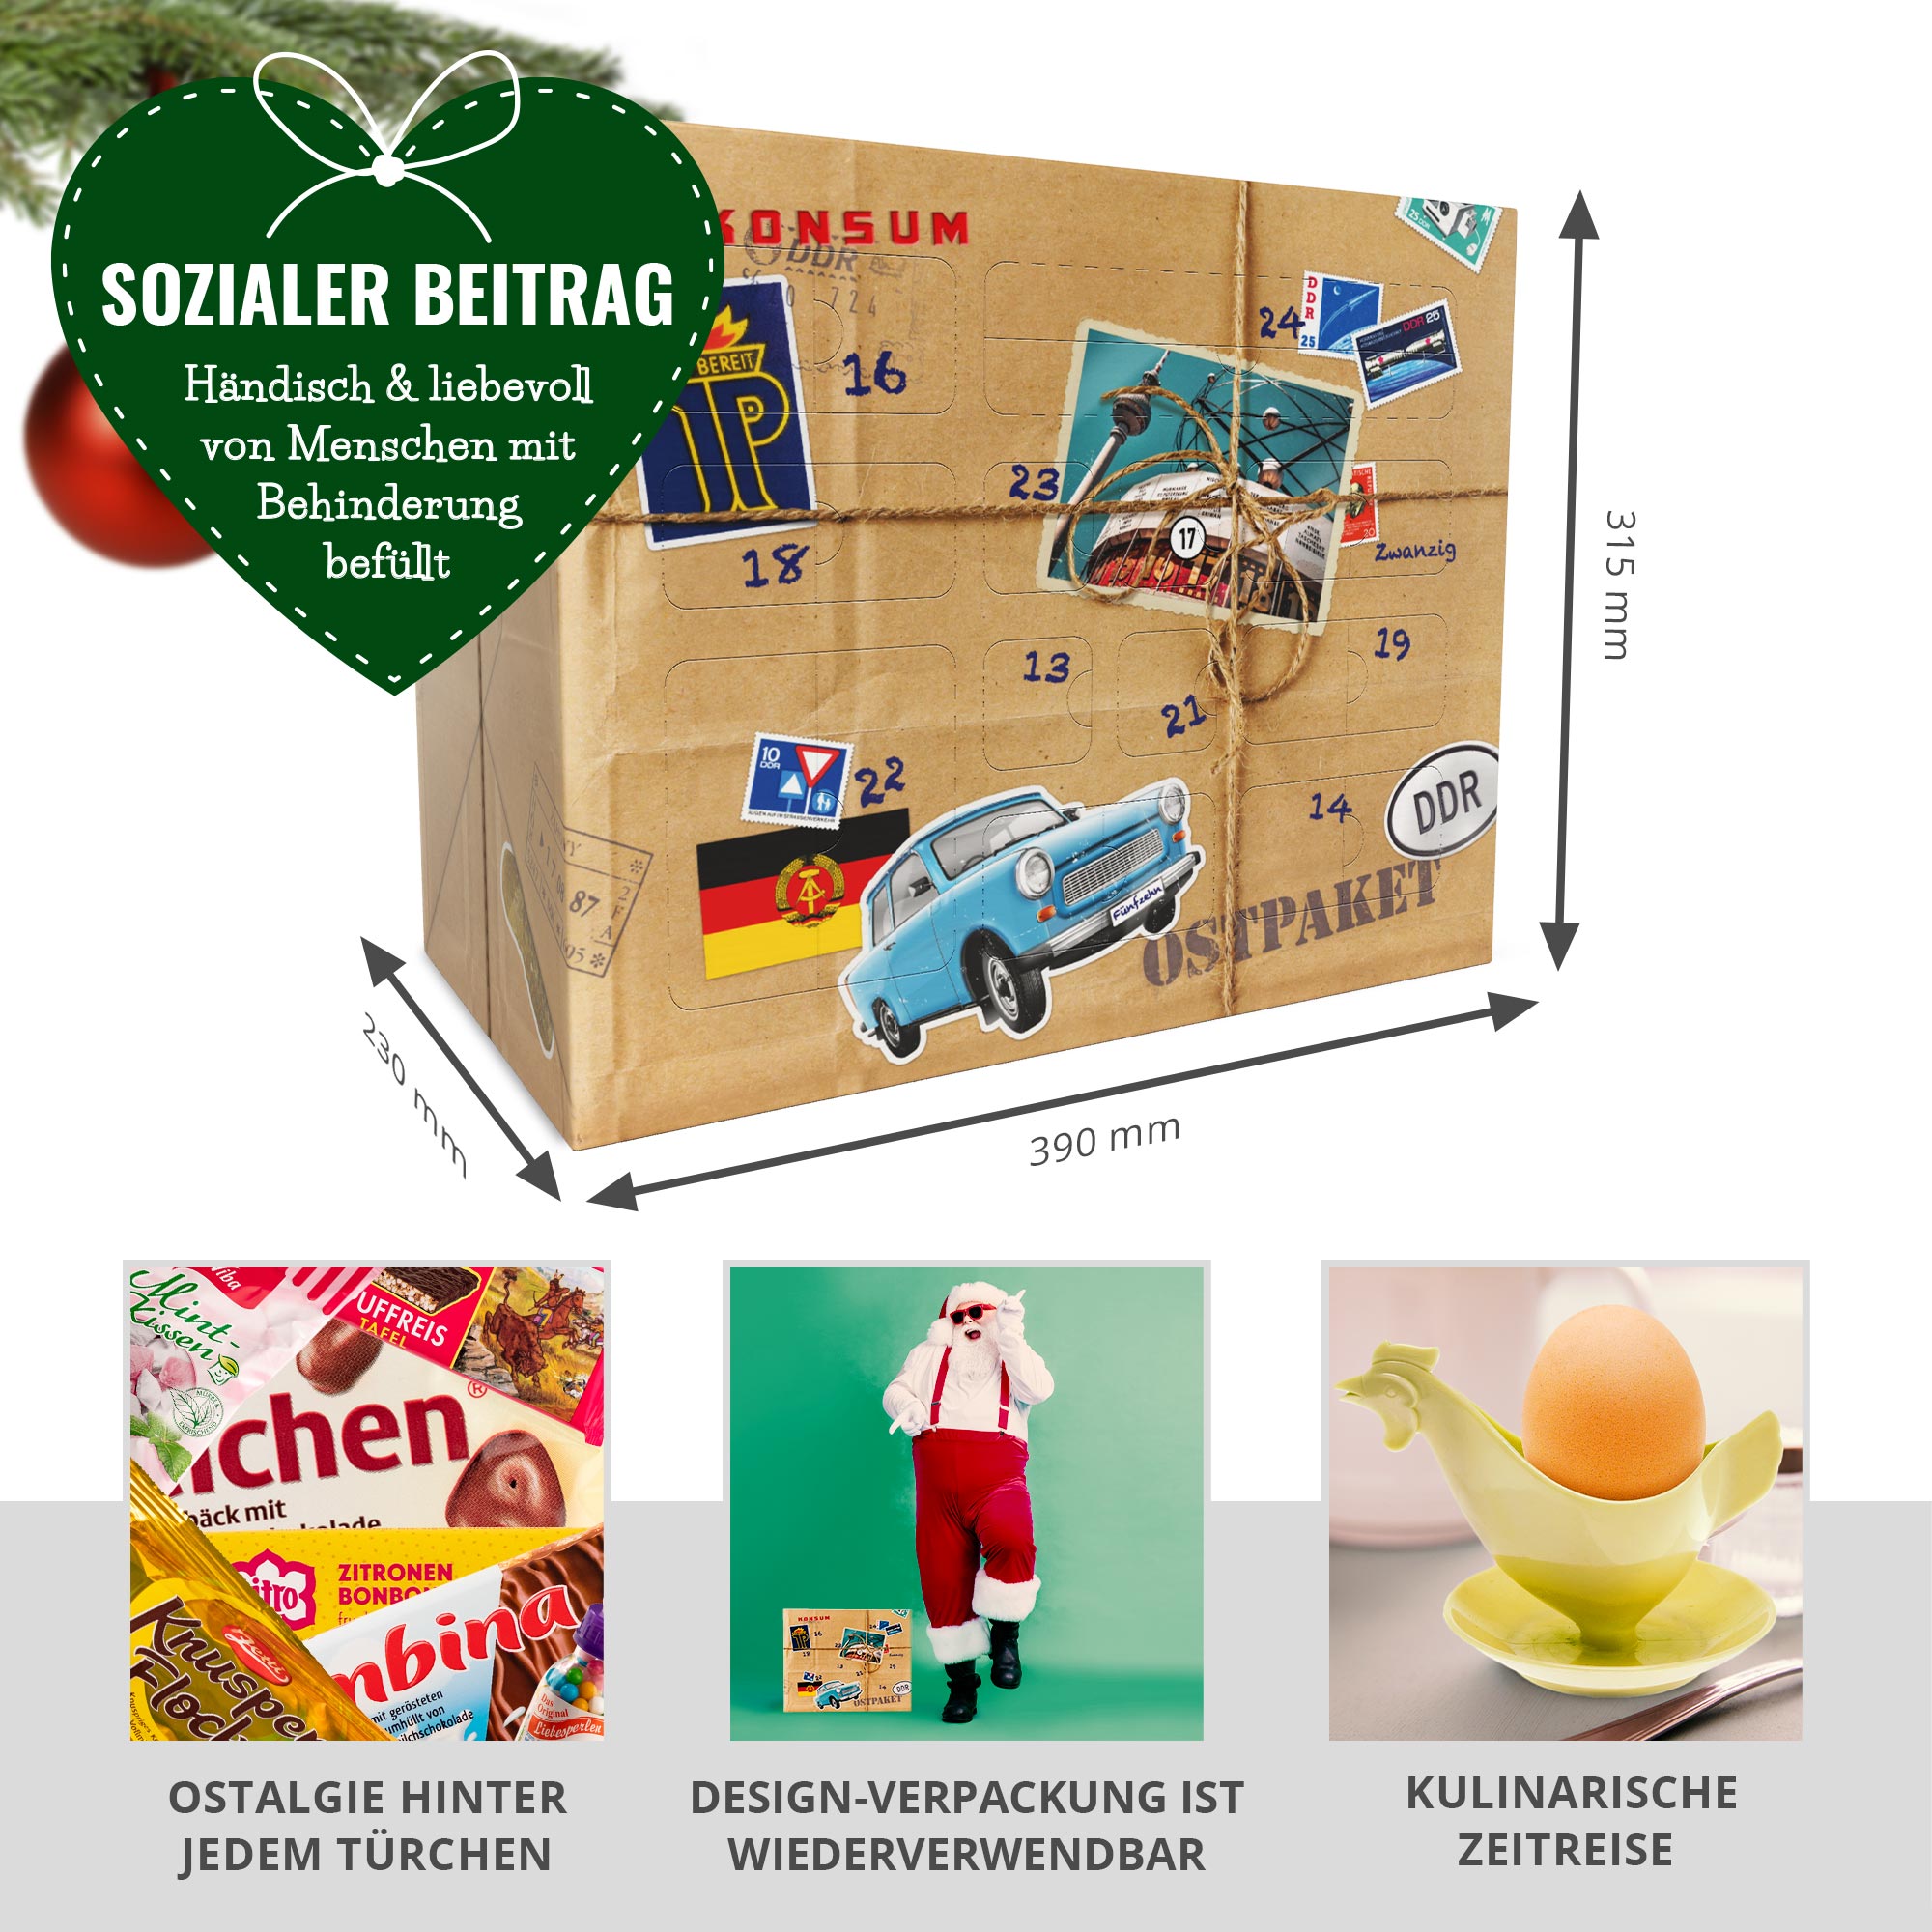 DDR Süßigkeiten Adventskalender 01-00008-DE-0000 - 1